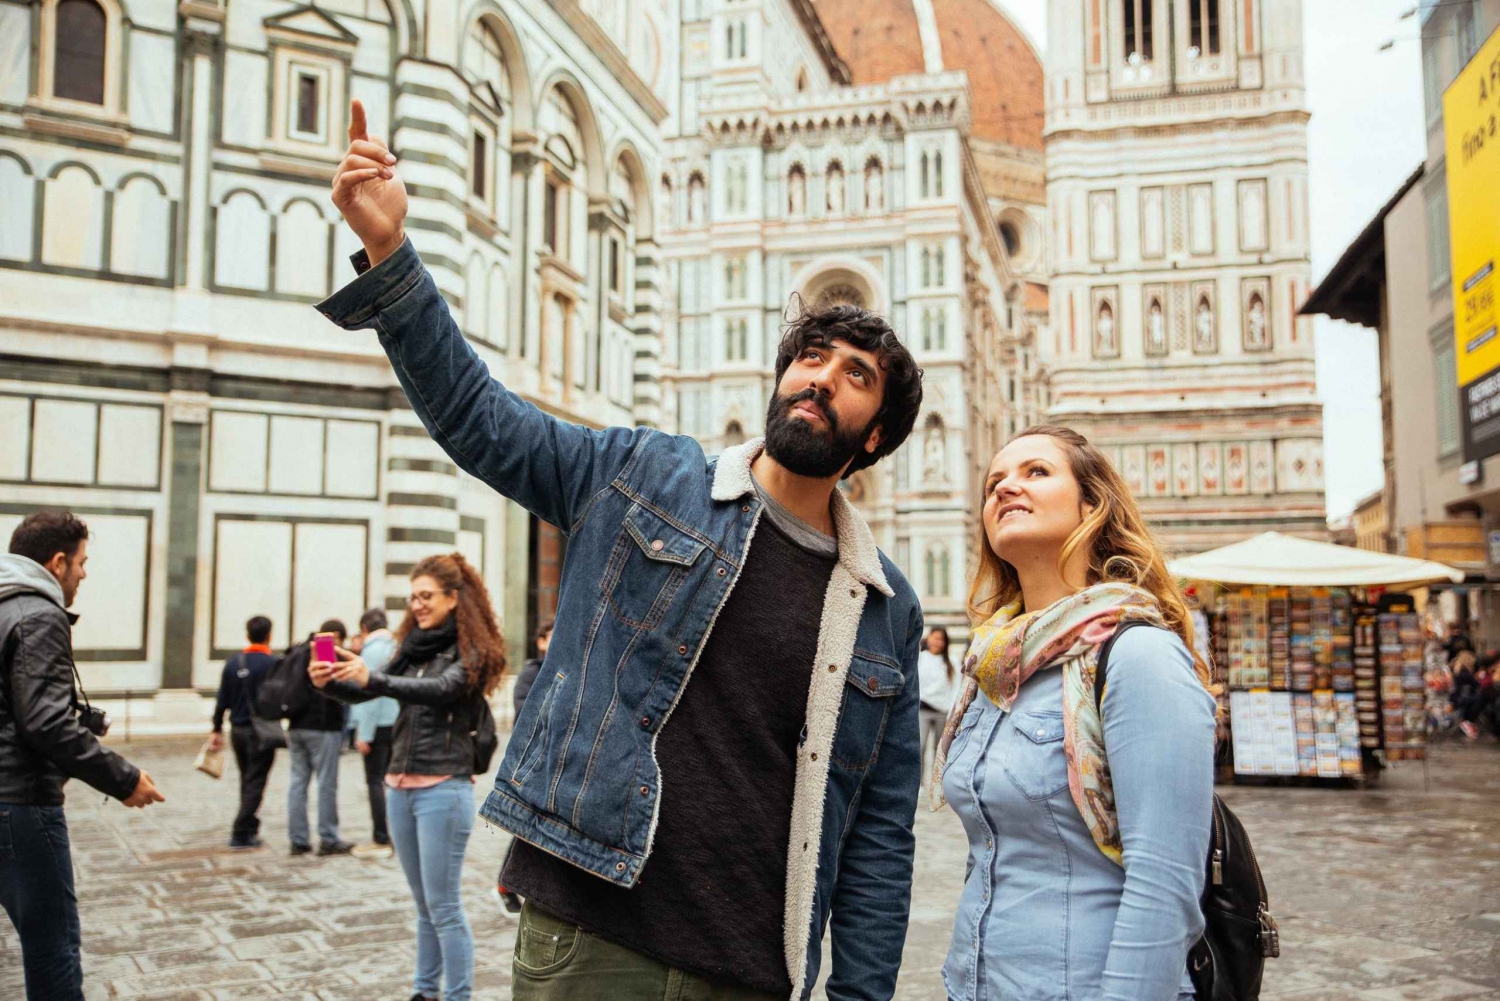 Firenze: Yksityinen kiertue paikallisten kanssa – Kohokohdat ja piilotetut jalokivet